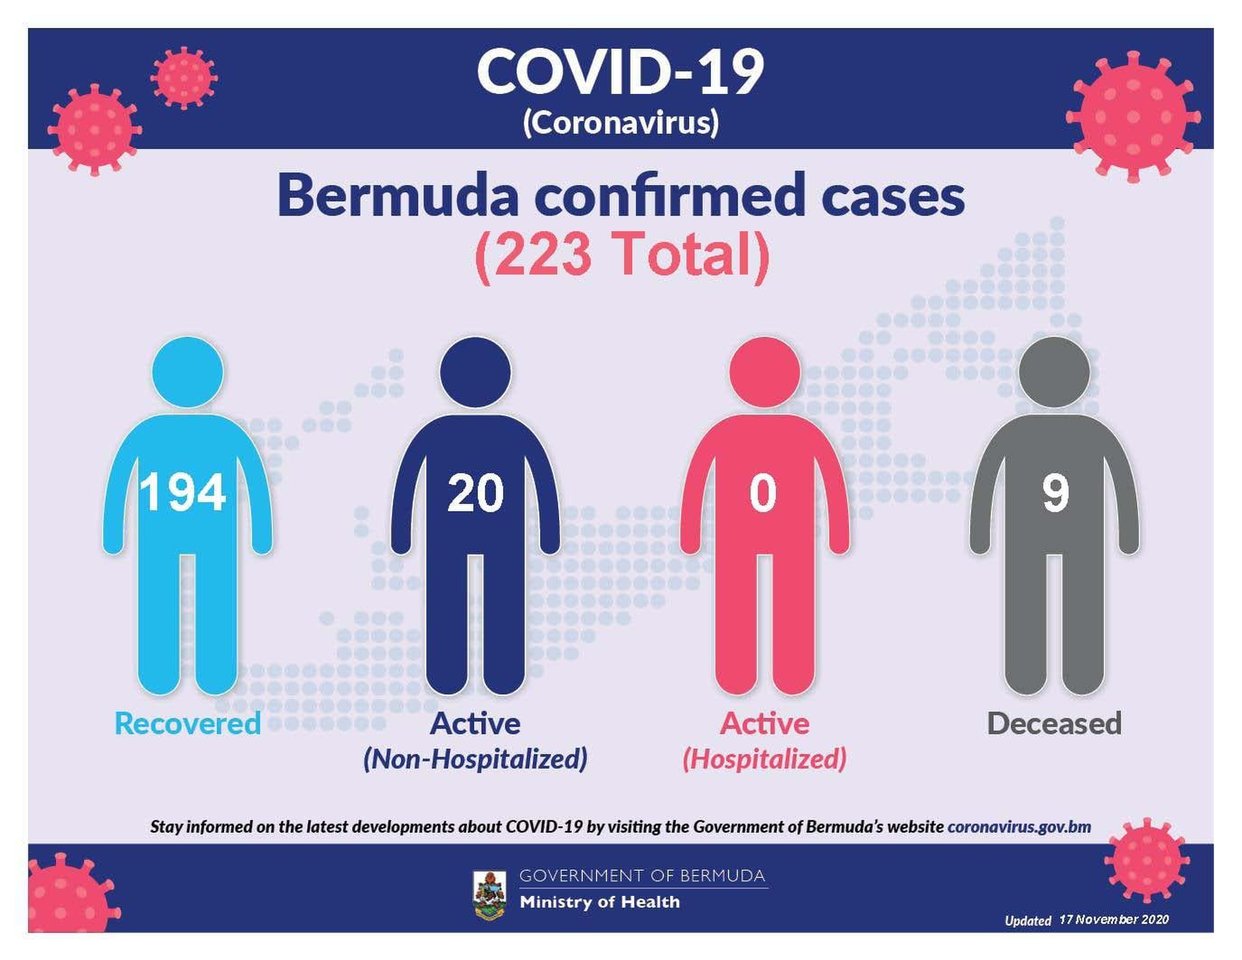 No new COVID-19 cases reported in Bermuda, 17 November